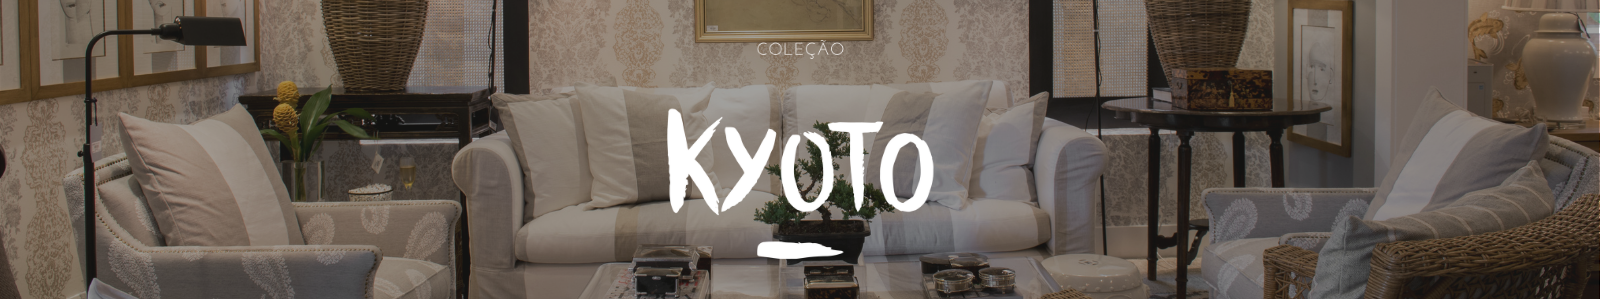 Banner com a logo da coleção Kyoto